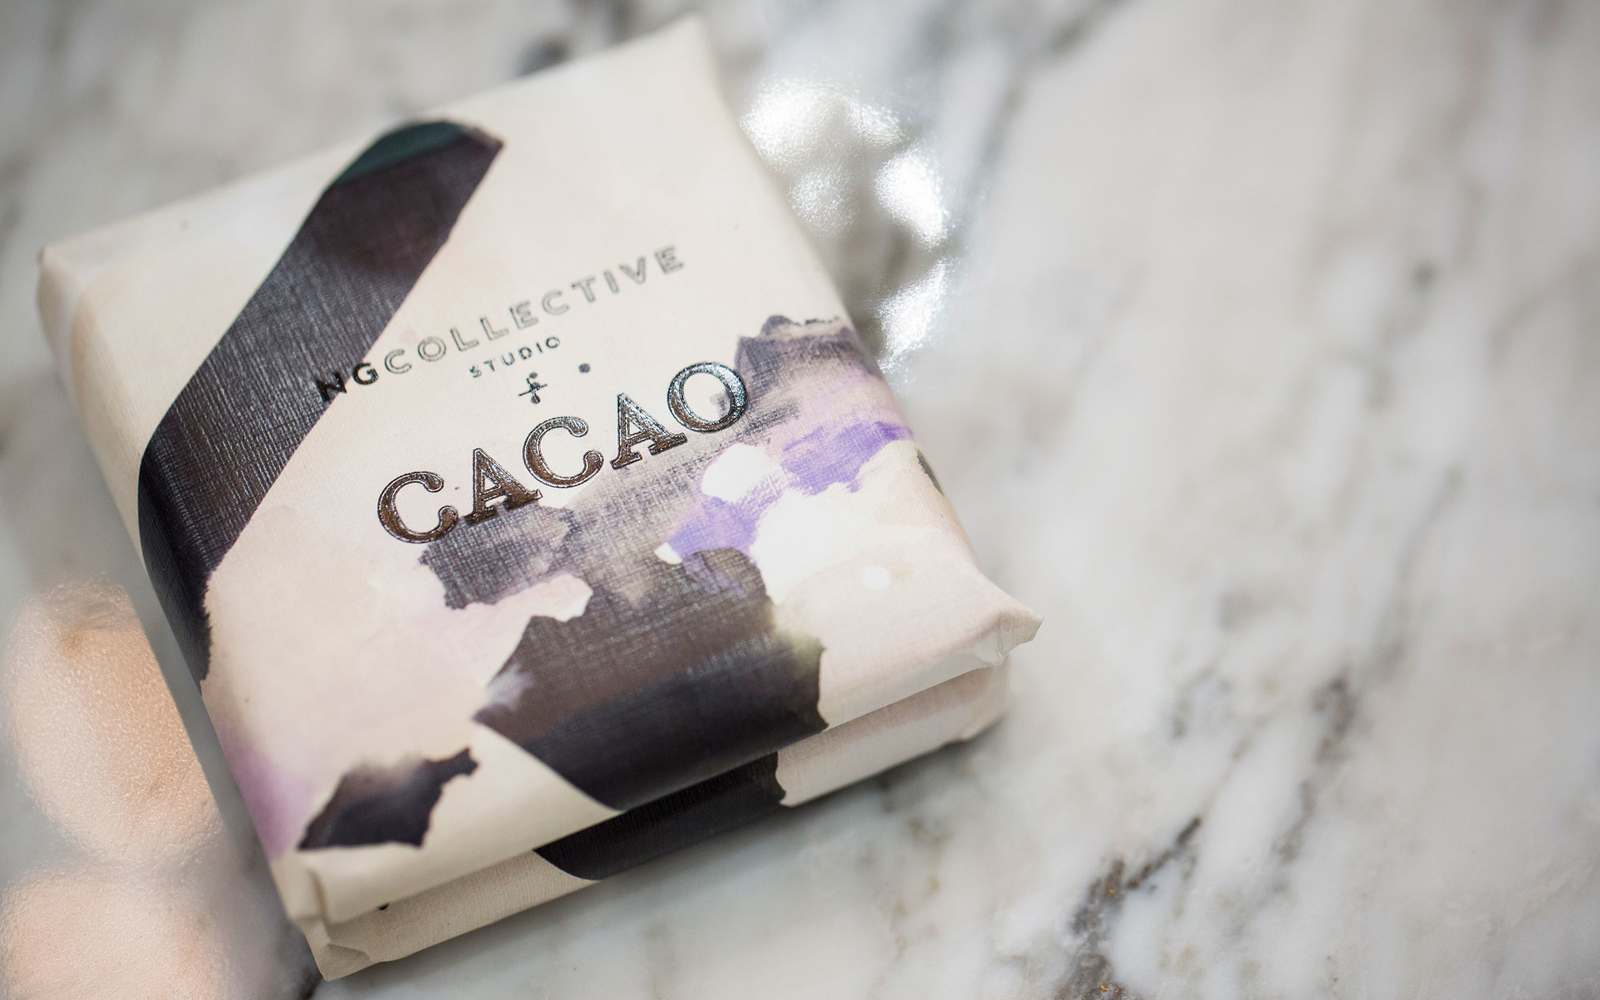 Atlanta Caocao Chocolate Souvenirs